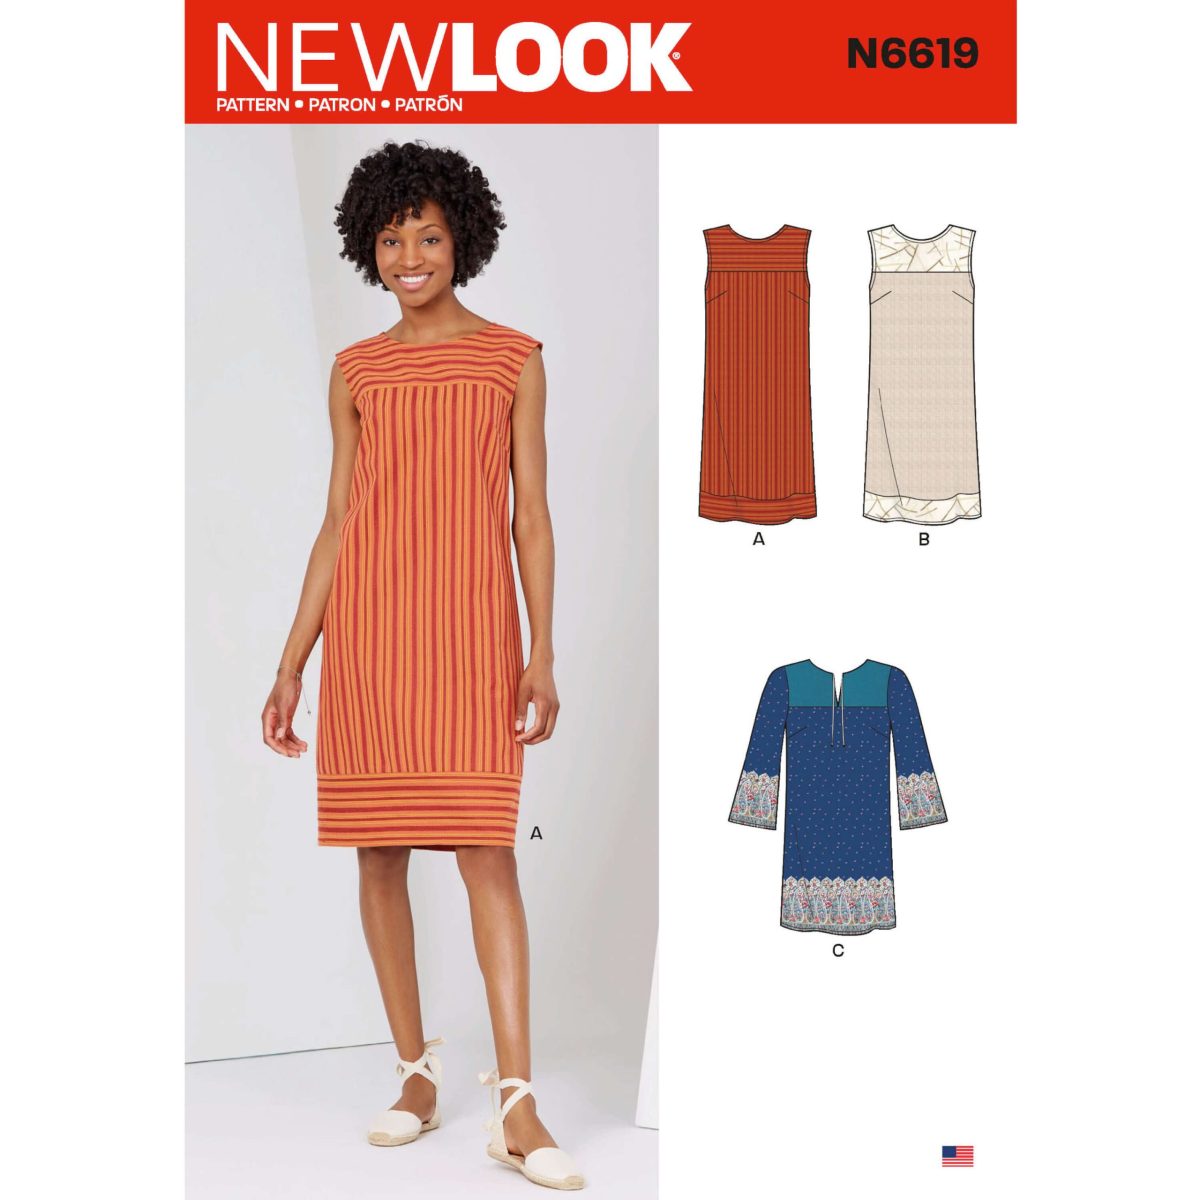 New Look Sewing Pattern N6619 Misses' Dresses